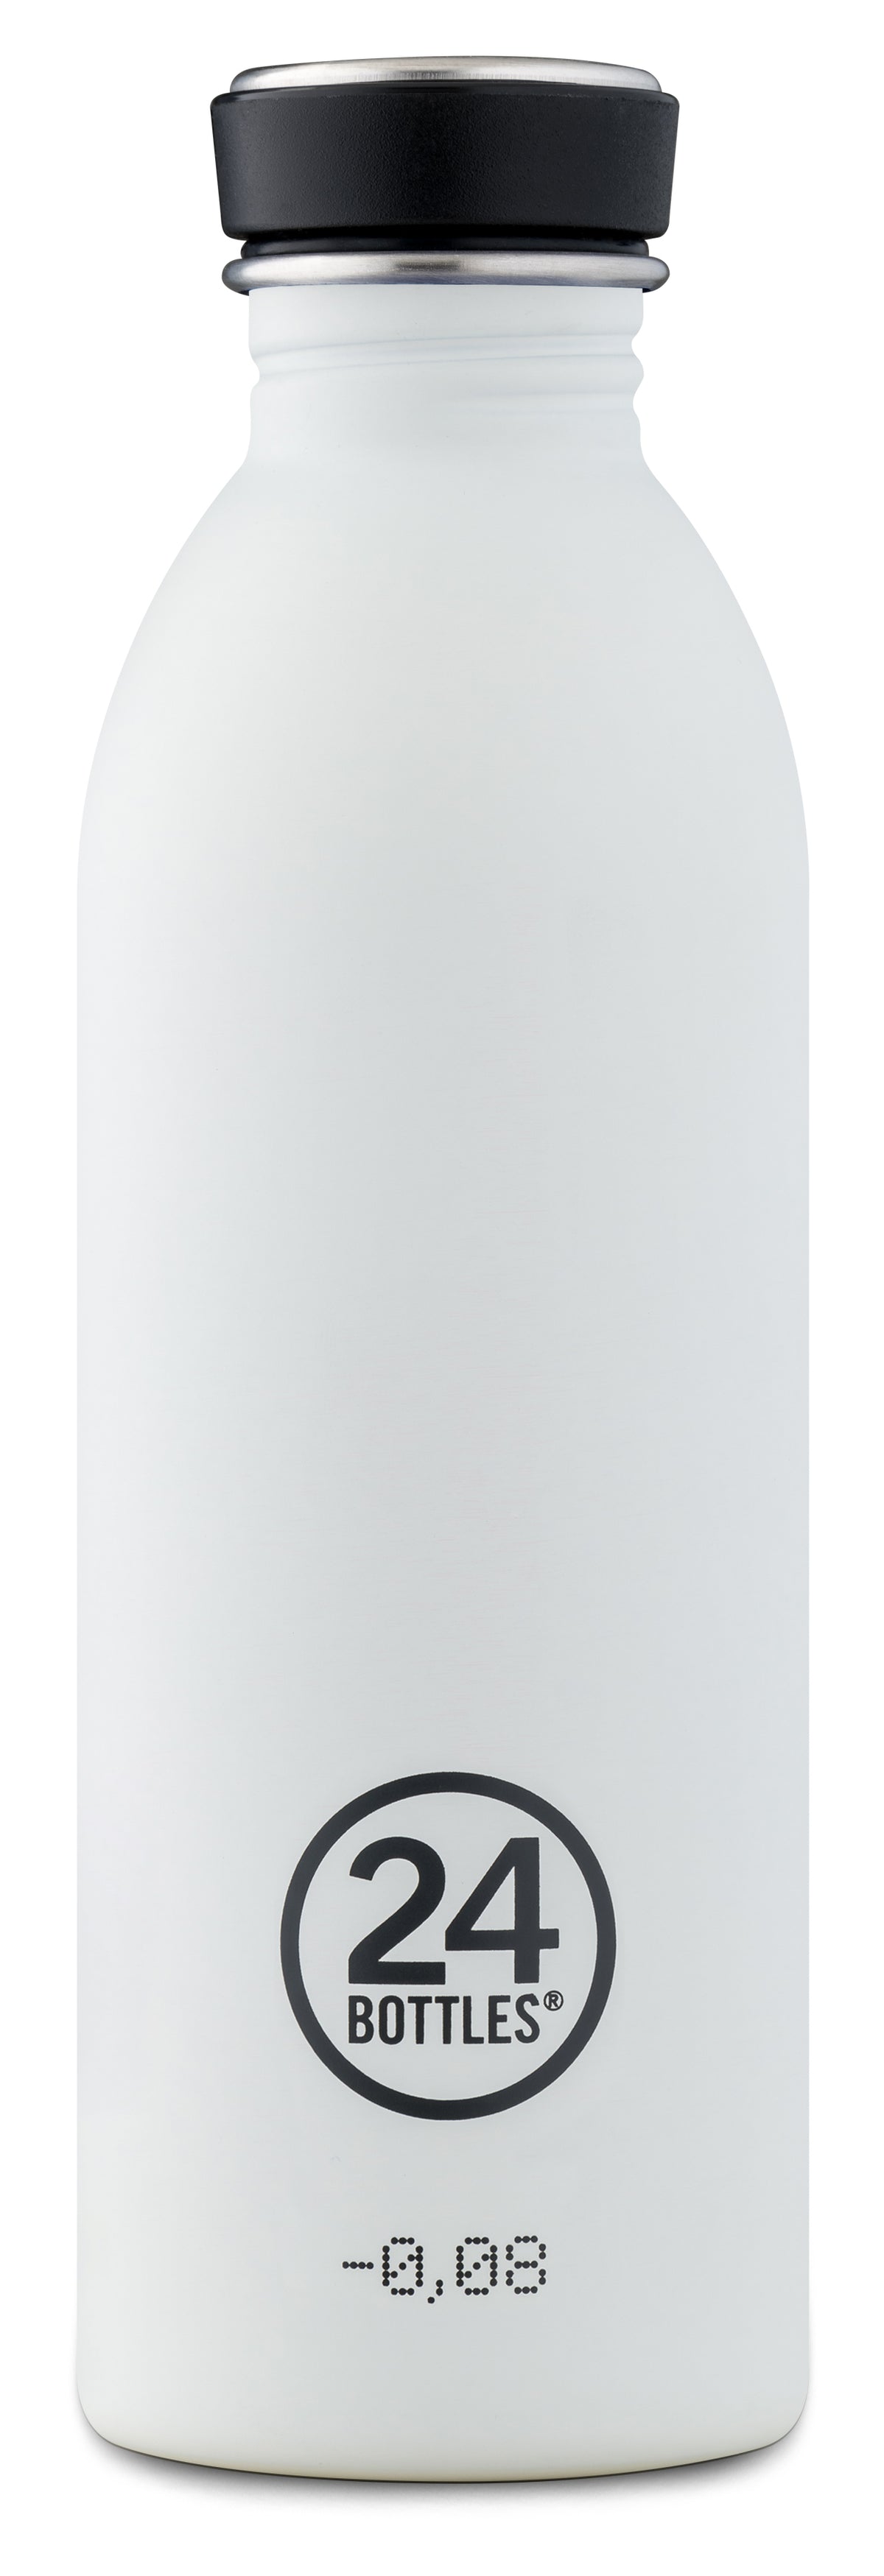 24BOTTLES Urban Lightest Stainless Steel Water Bottle - 500ml - Ice White